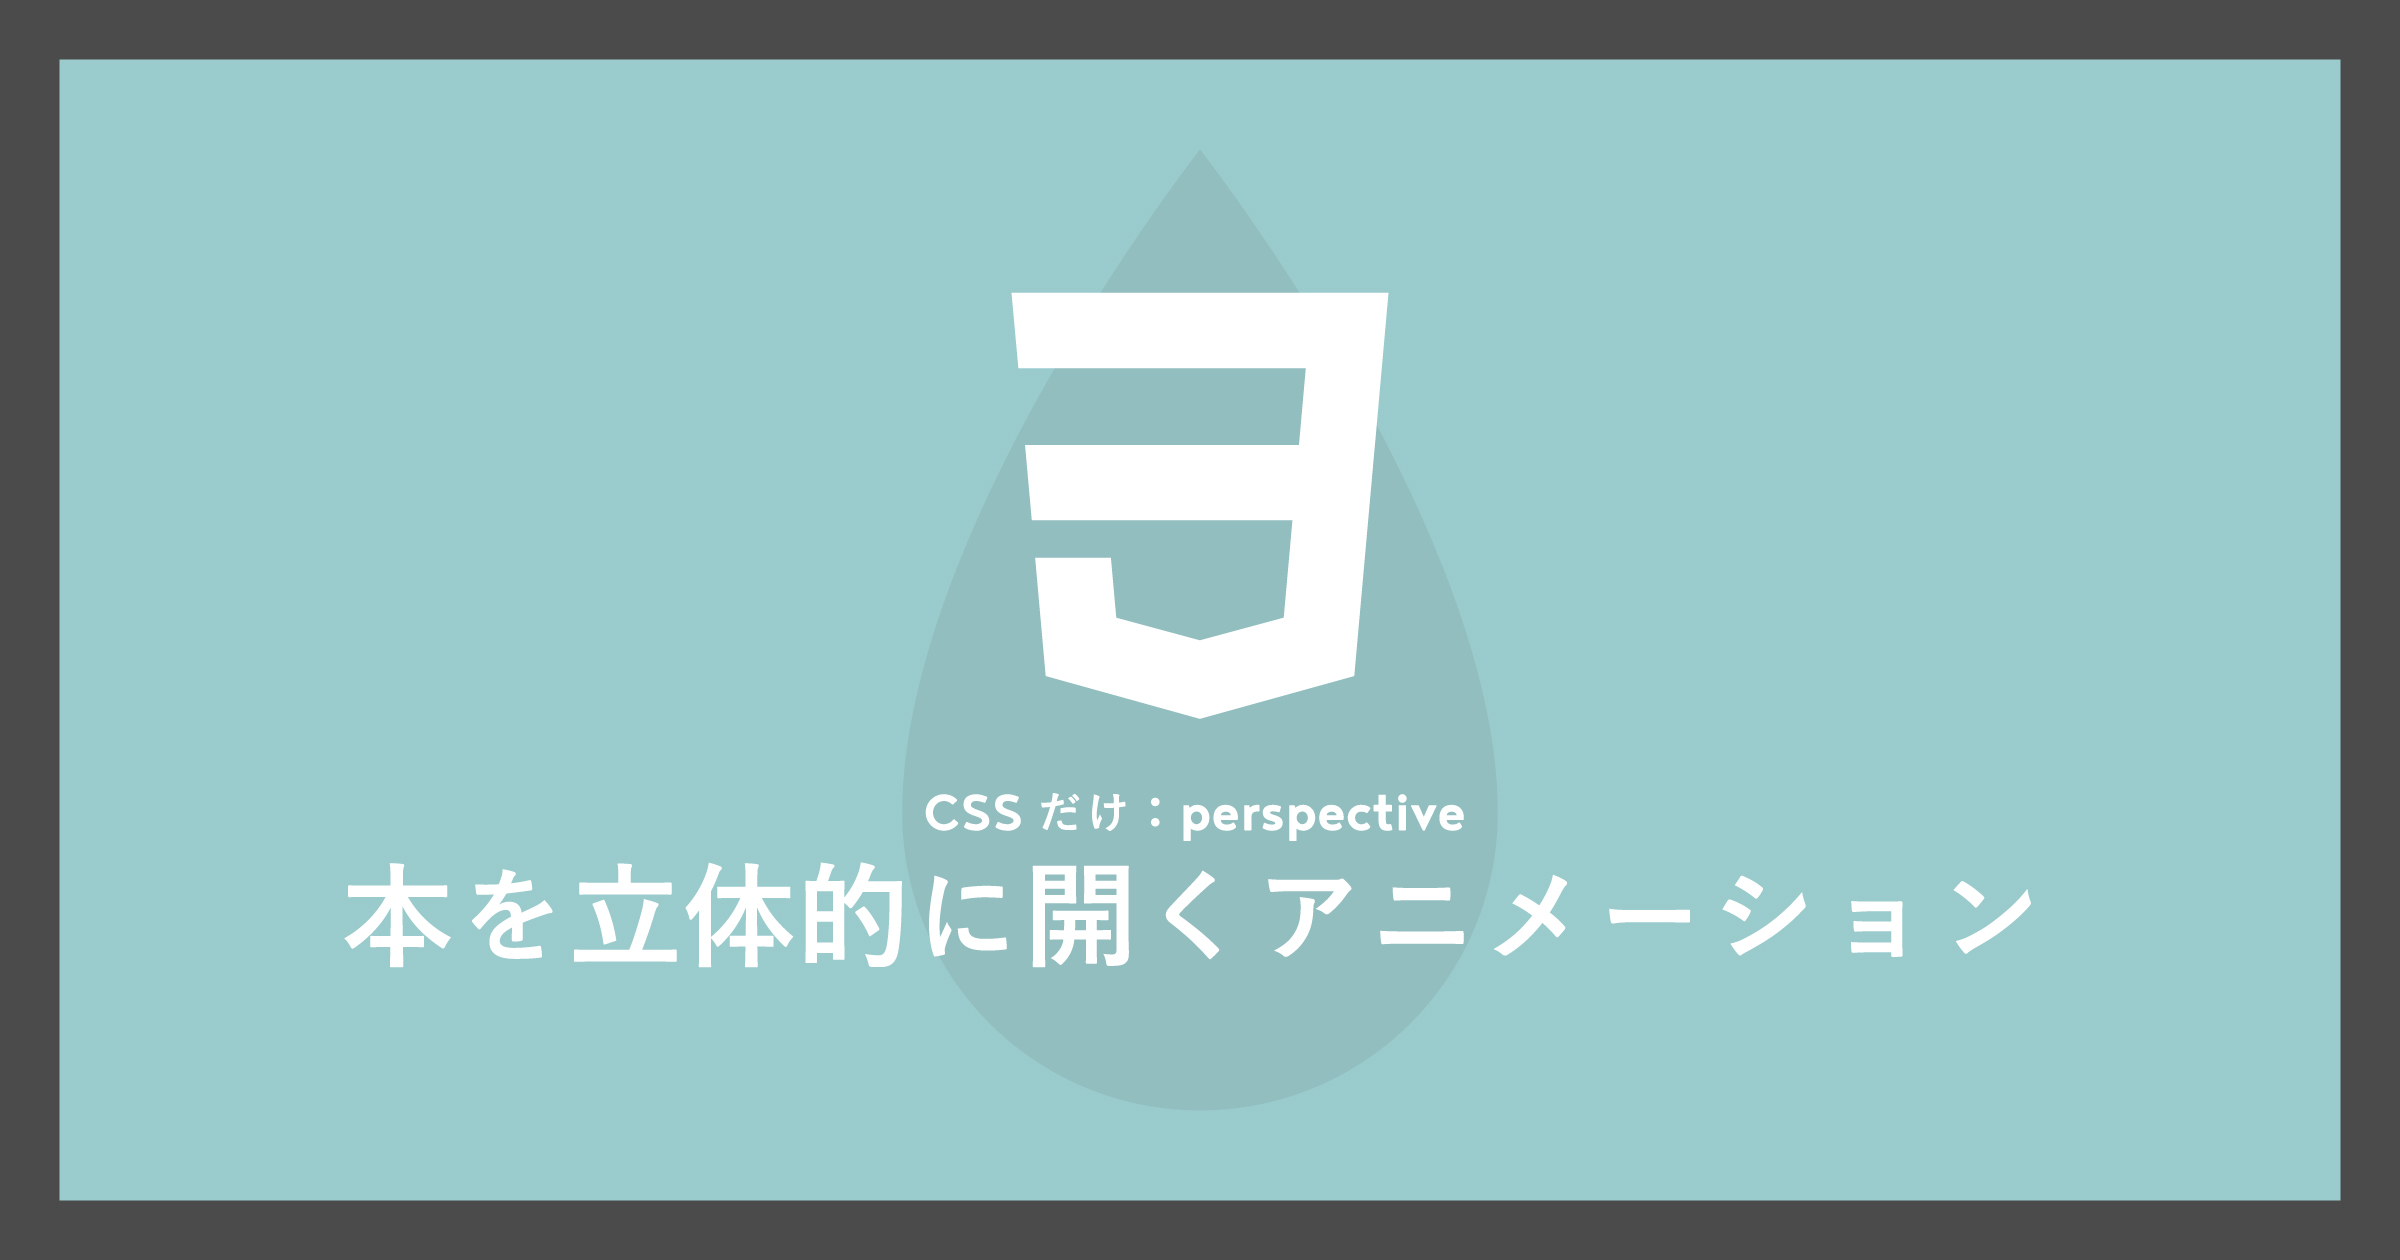 「[CSSだけ]perspectiveで本を立体的に開くアニメーション」のアイキャッチ画像